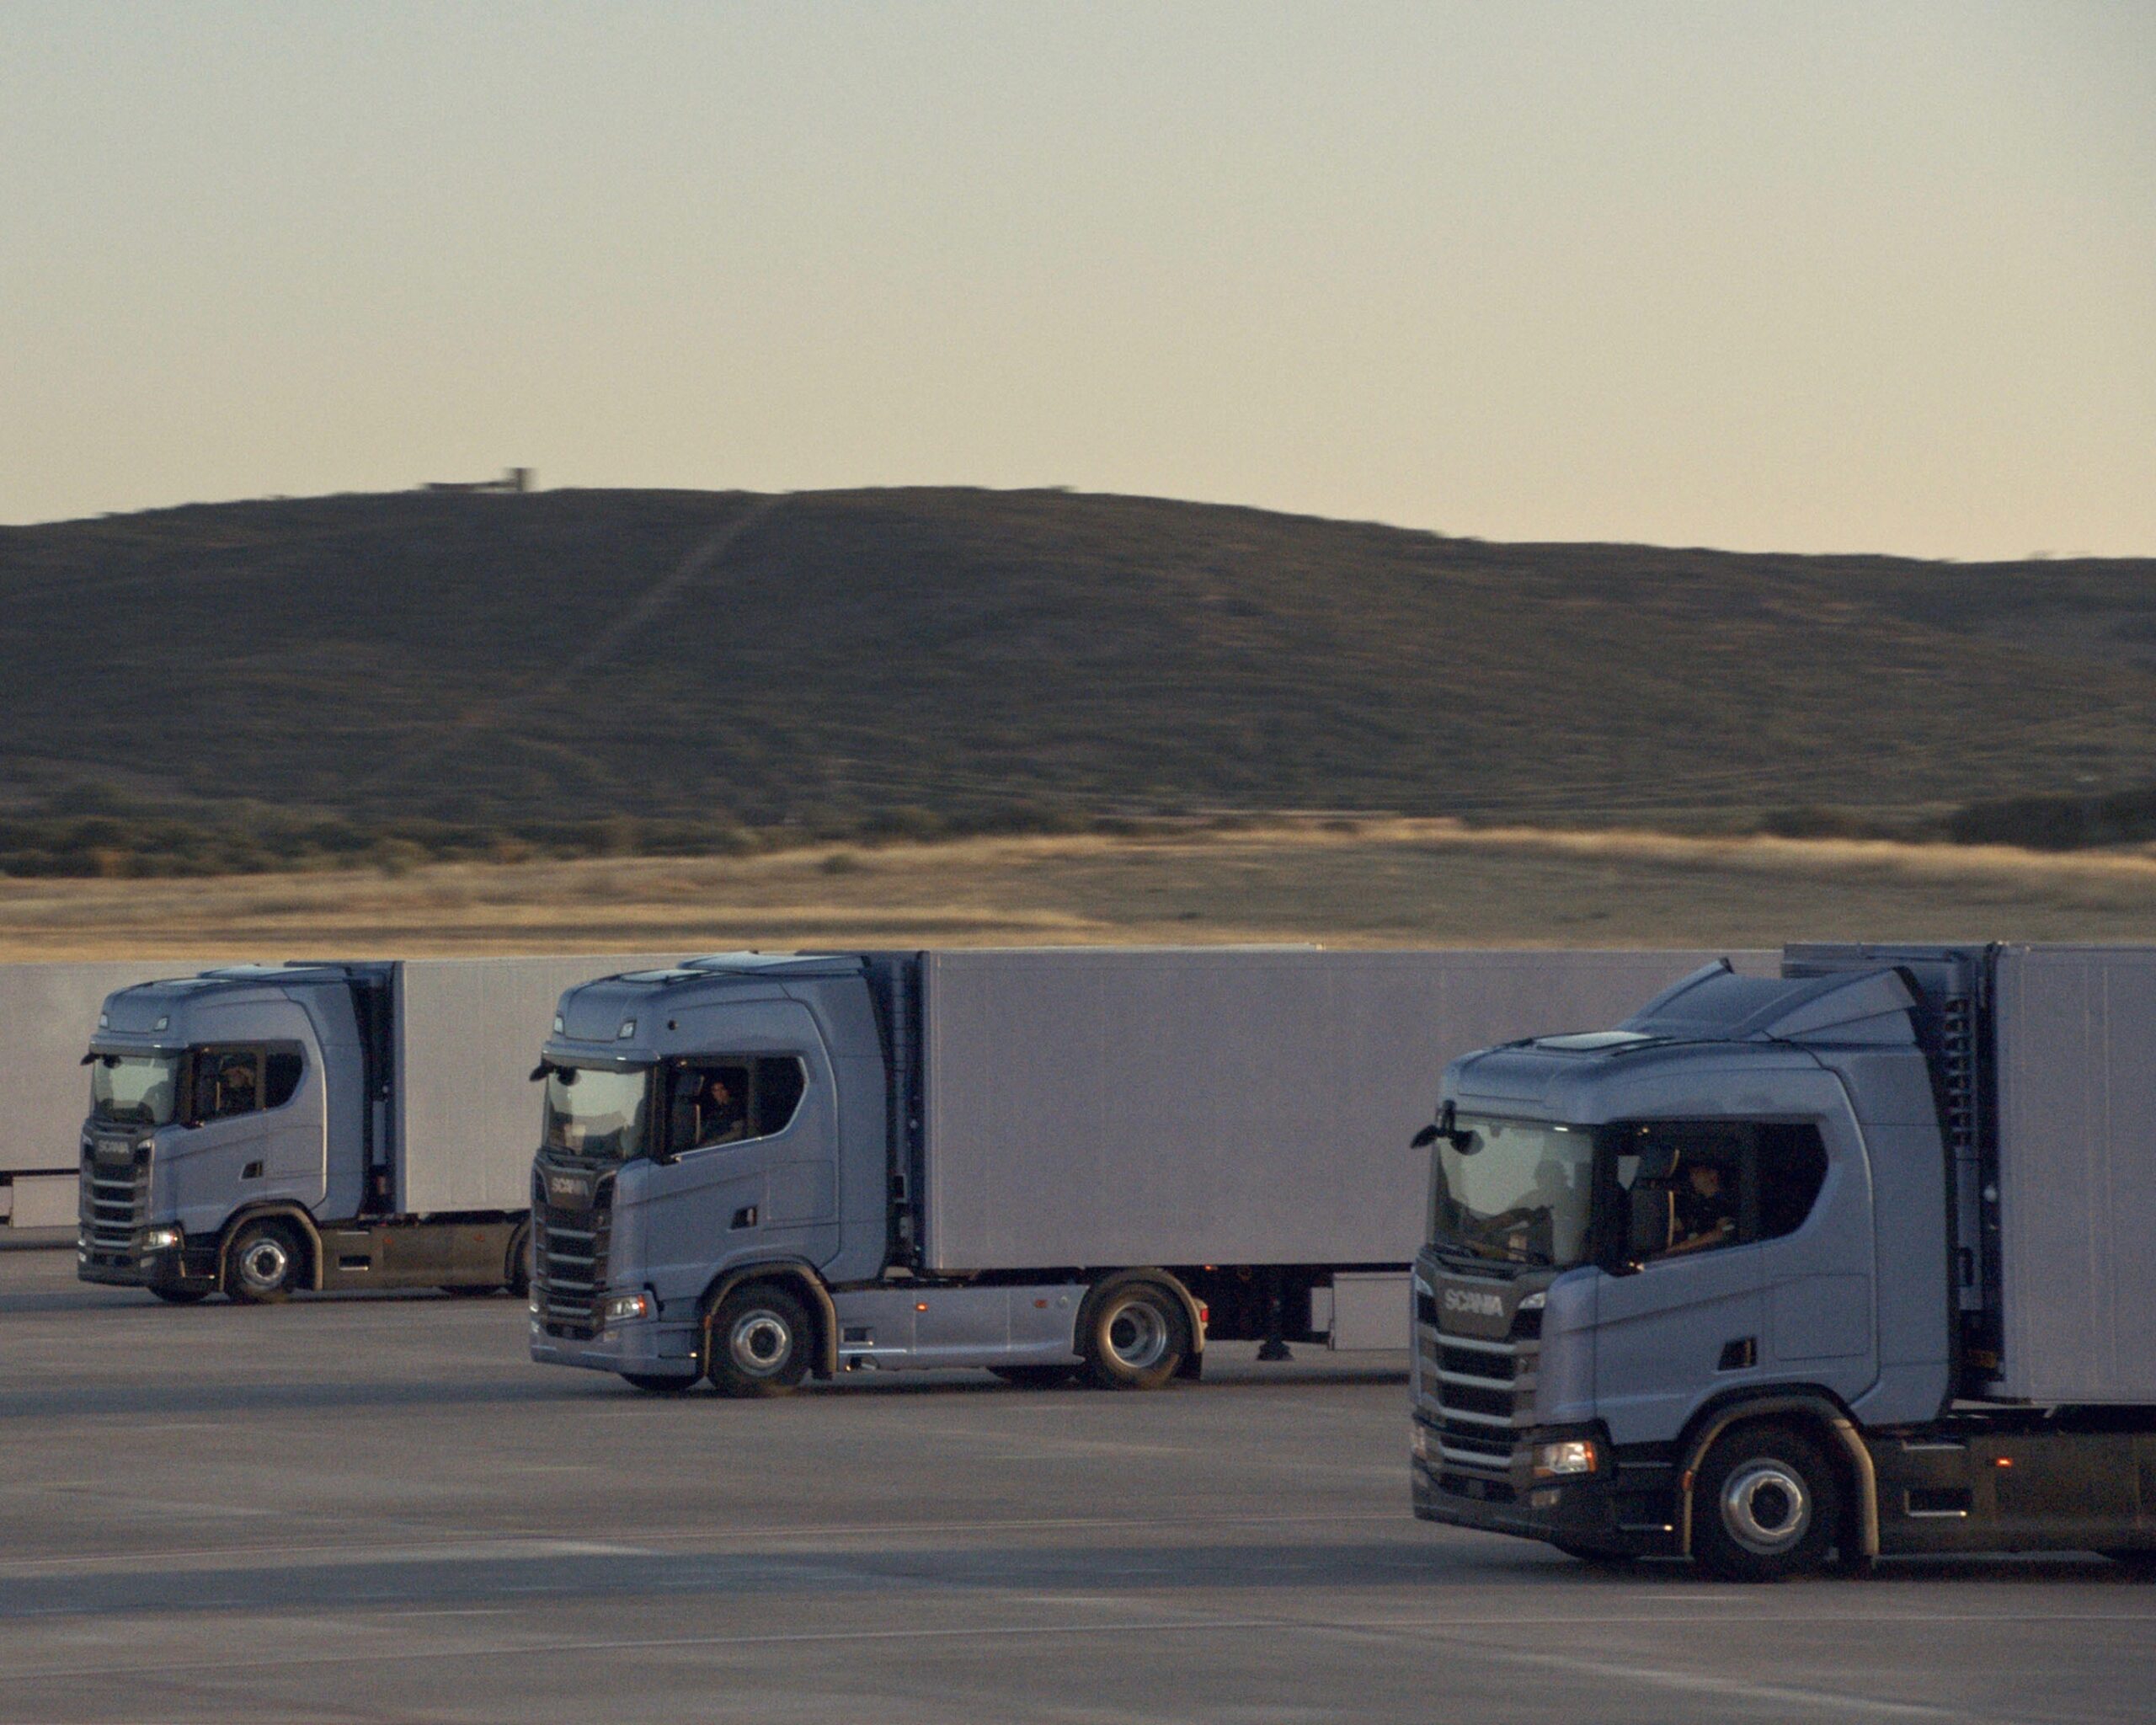 Autotrasporto: Scania presenta il servizio assistenza flotte